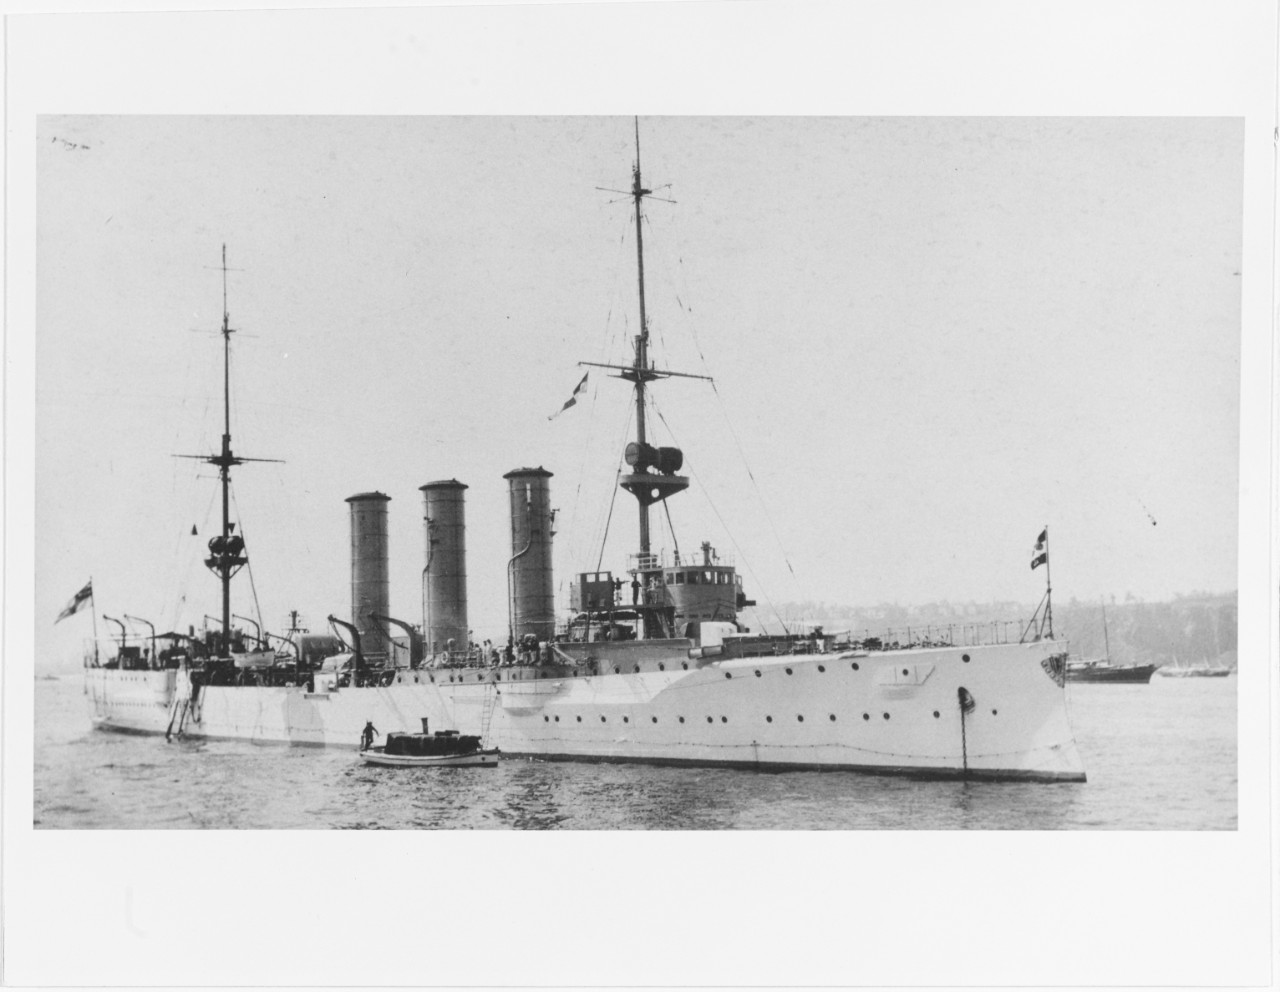 DRESDEN (German light cruiser, 1907-1915)